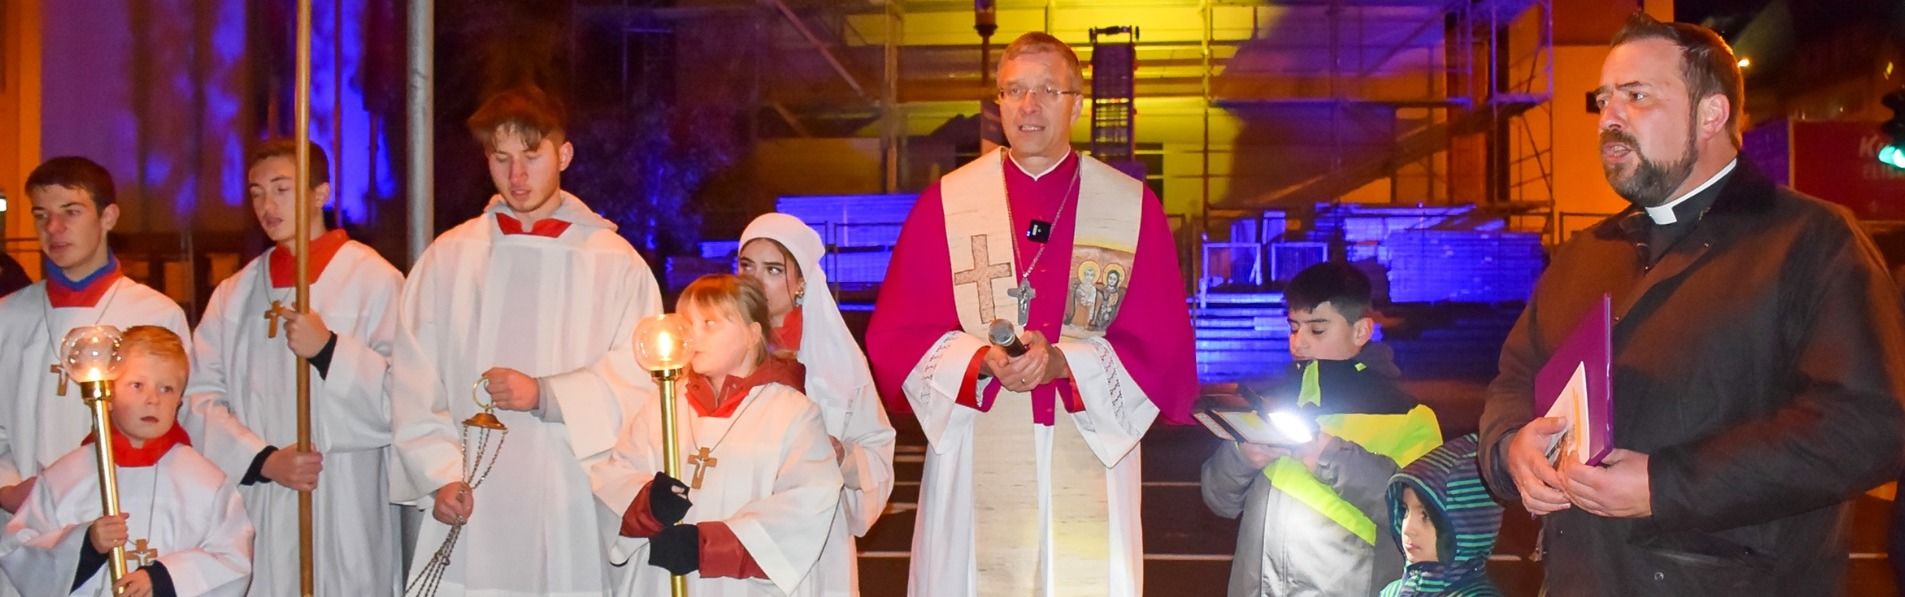 Bischof Dr. Michael Gerber (Mitte) war am Freitag zum Elisabethtag nach Kassel gekommen. Der Abend begann mit einer Statio vor der Elisabethkirche.